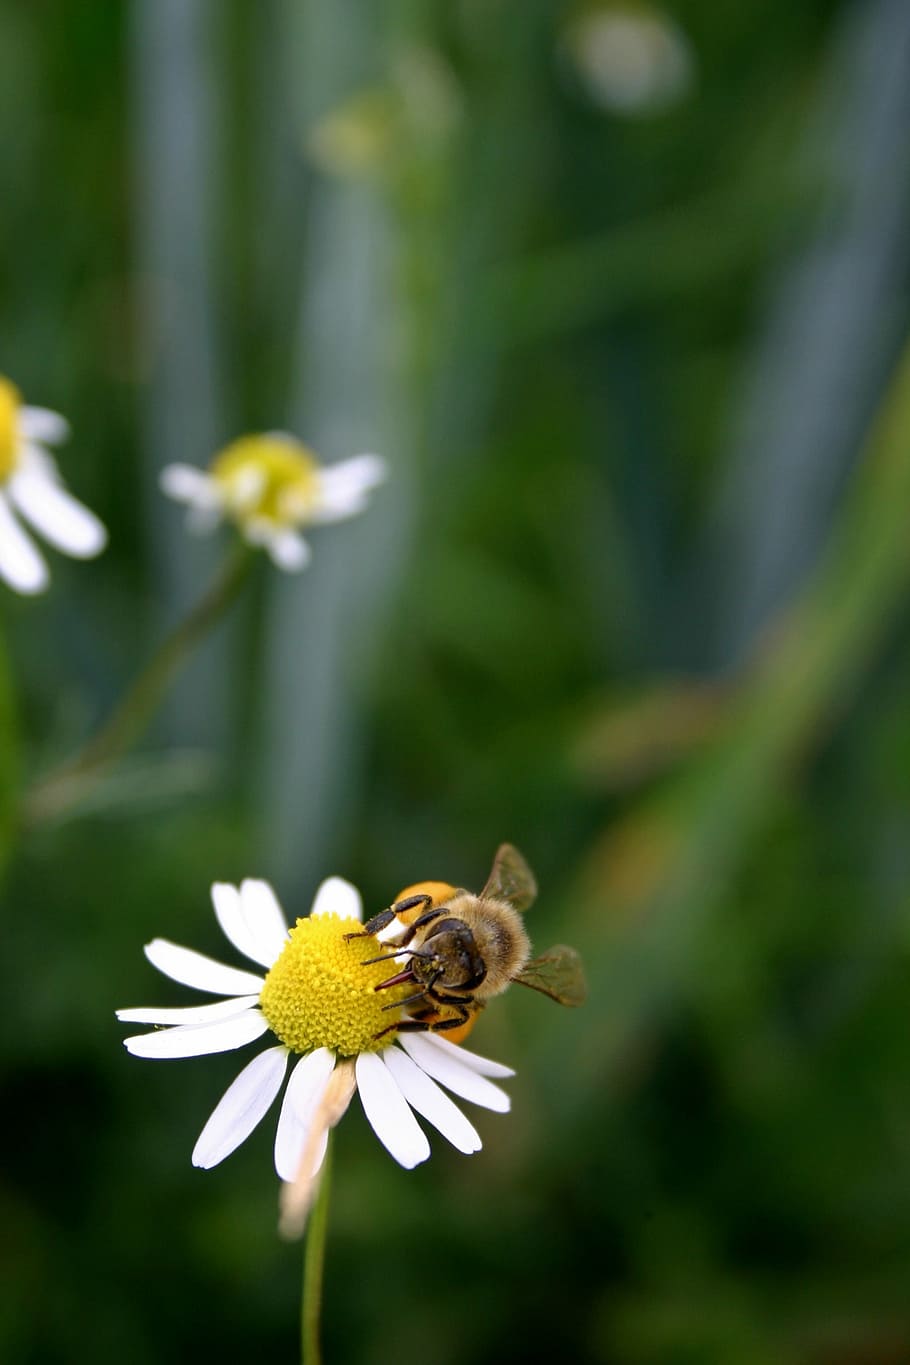 Abeja, miel, abeja melífera, insecto, cierre, polen, néctar, abeja melífera europea, apis mellifera, naturaleza